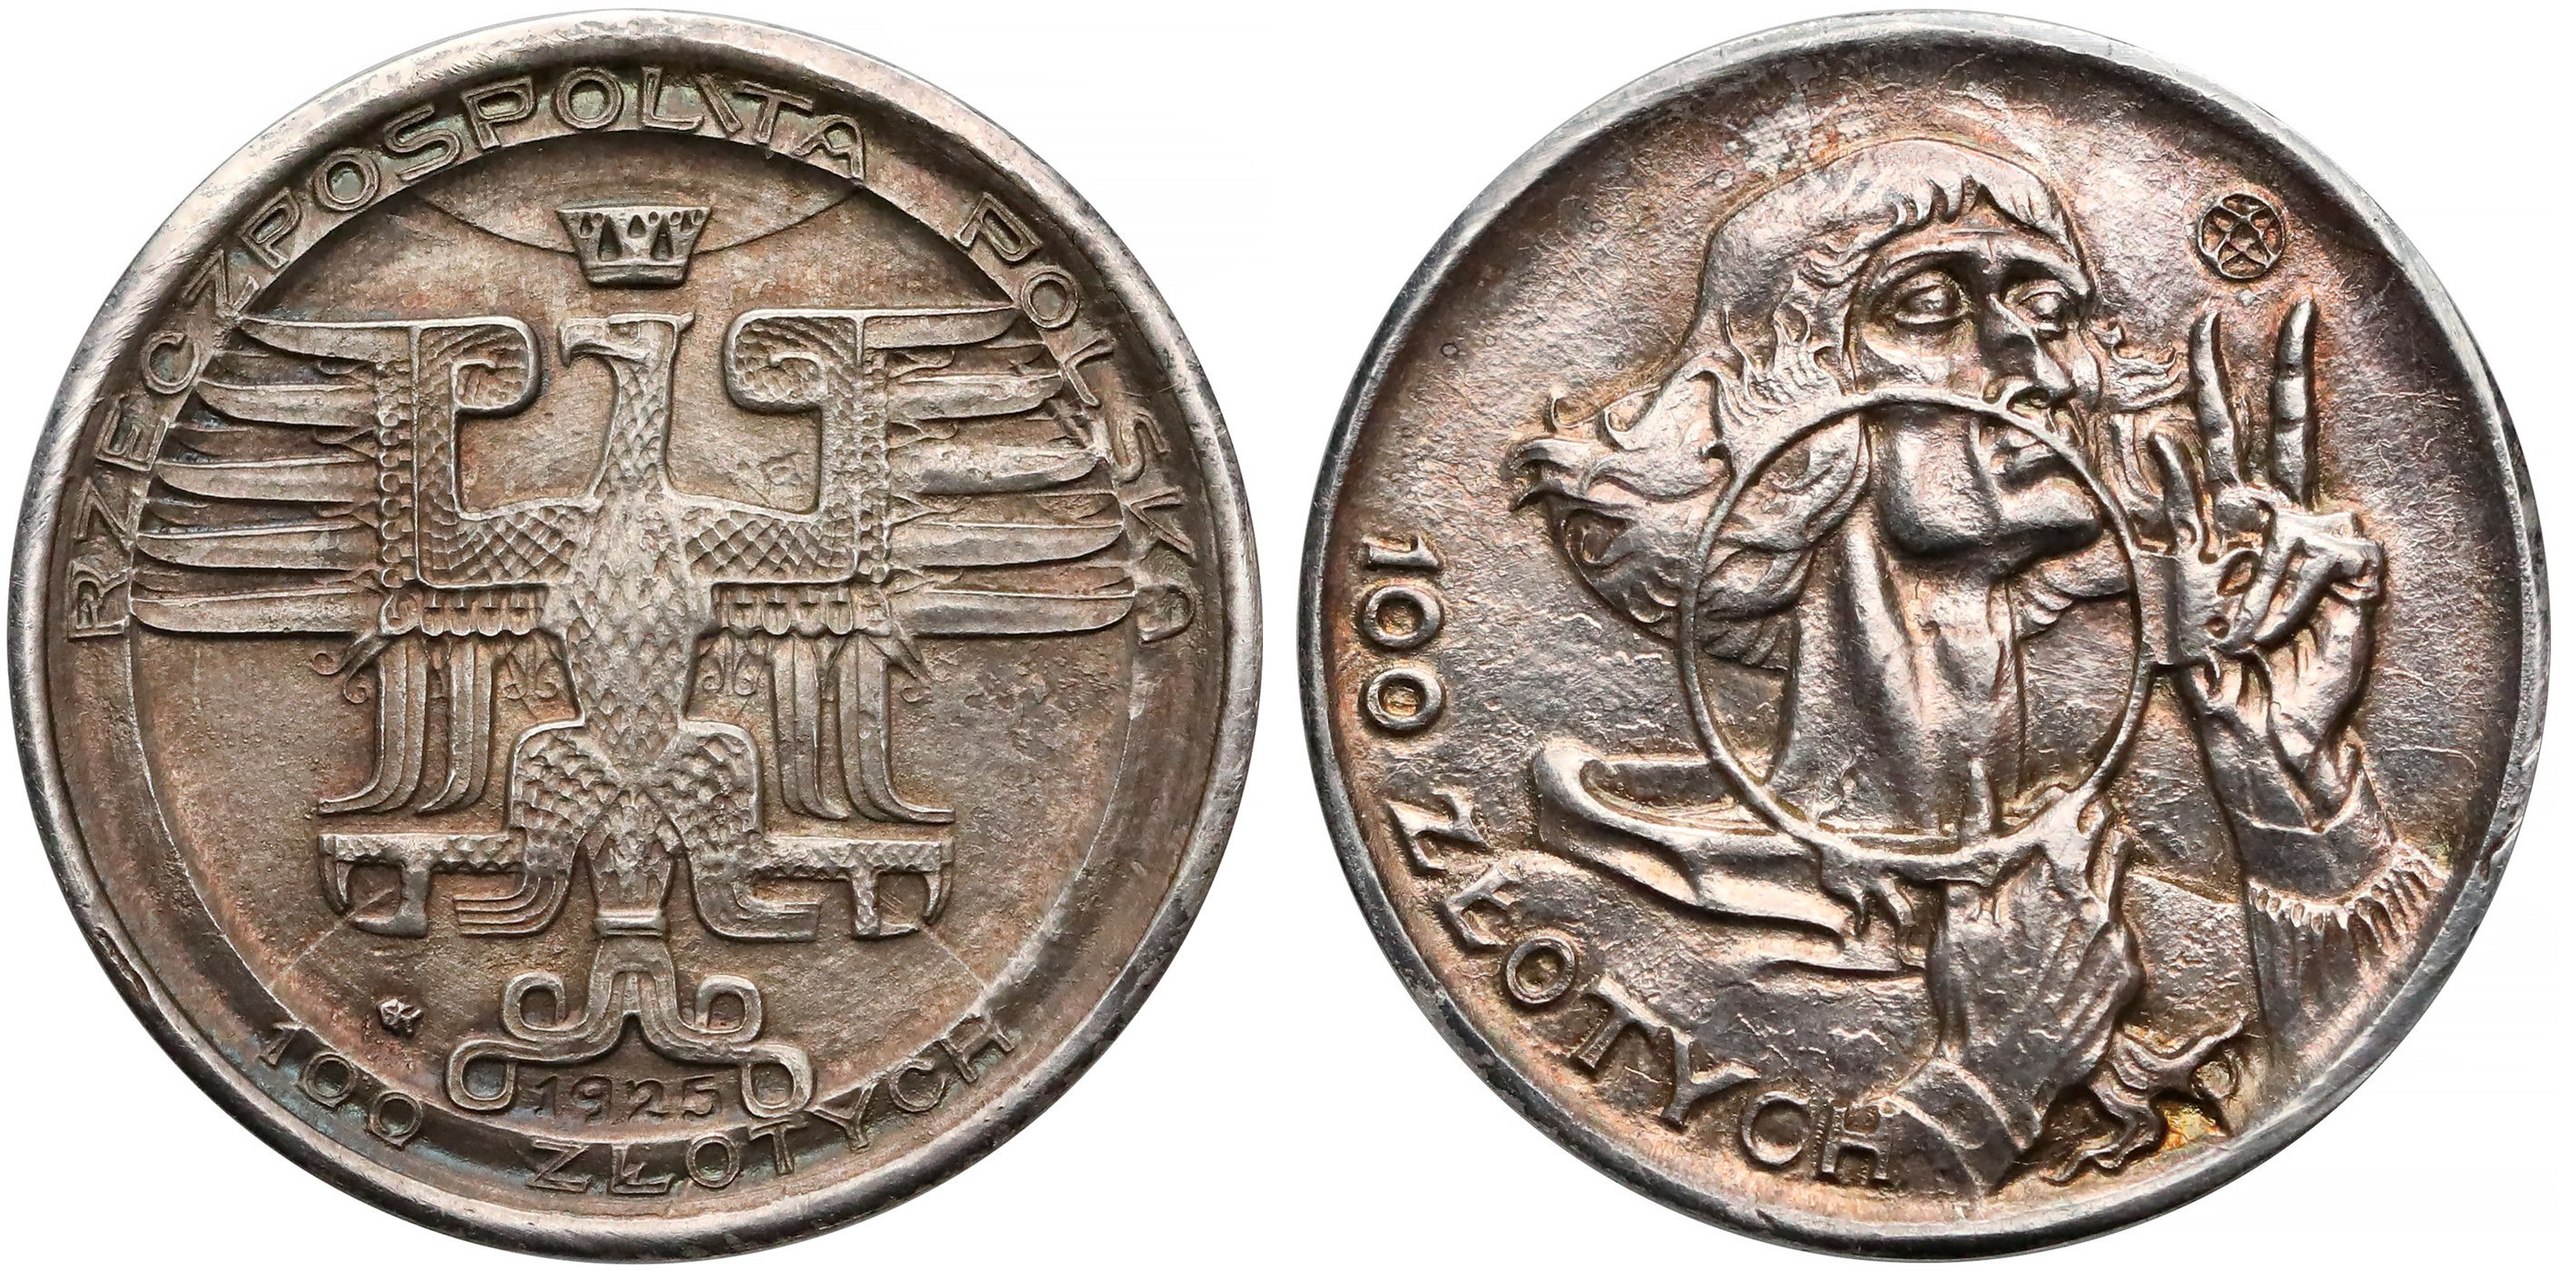 Stanisław Szukalski (1893-1987), moneta 100 złotych Mikołaj Kopernik, wersja wybita w srebrze, 1925 rok , źródło: wikipedia.pl